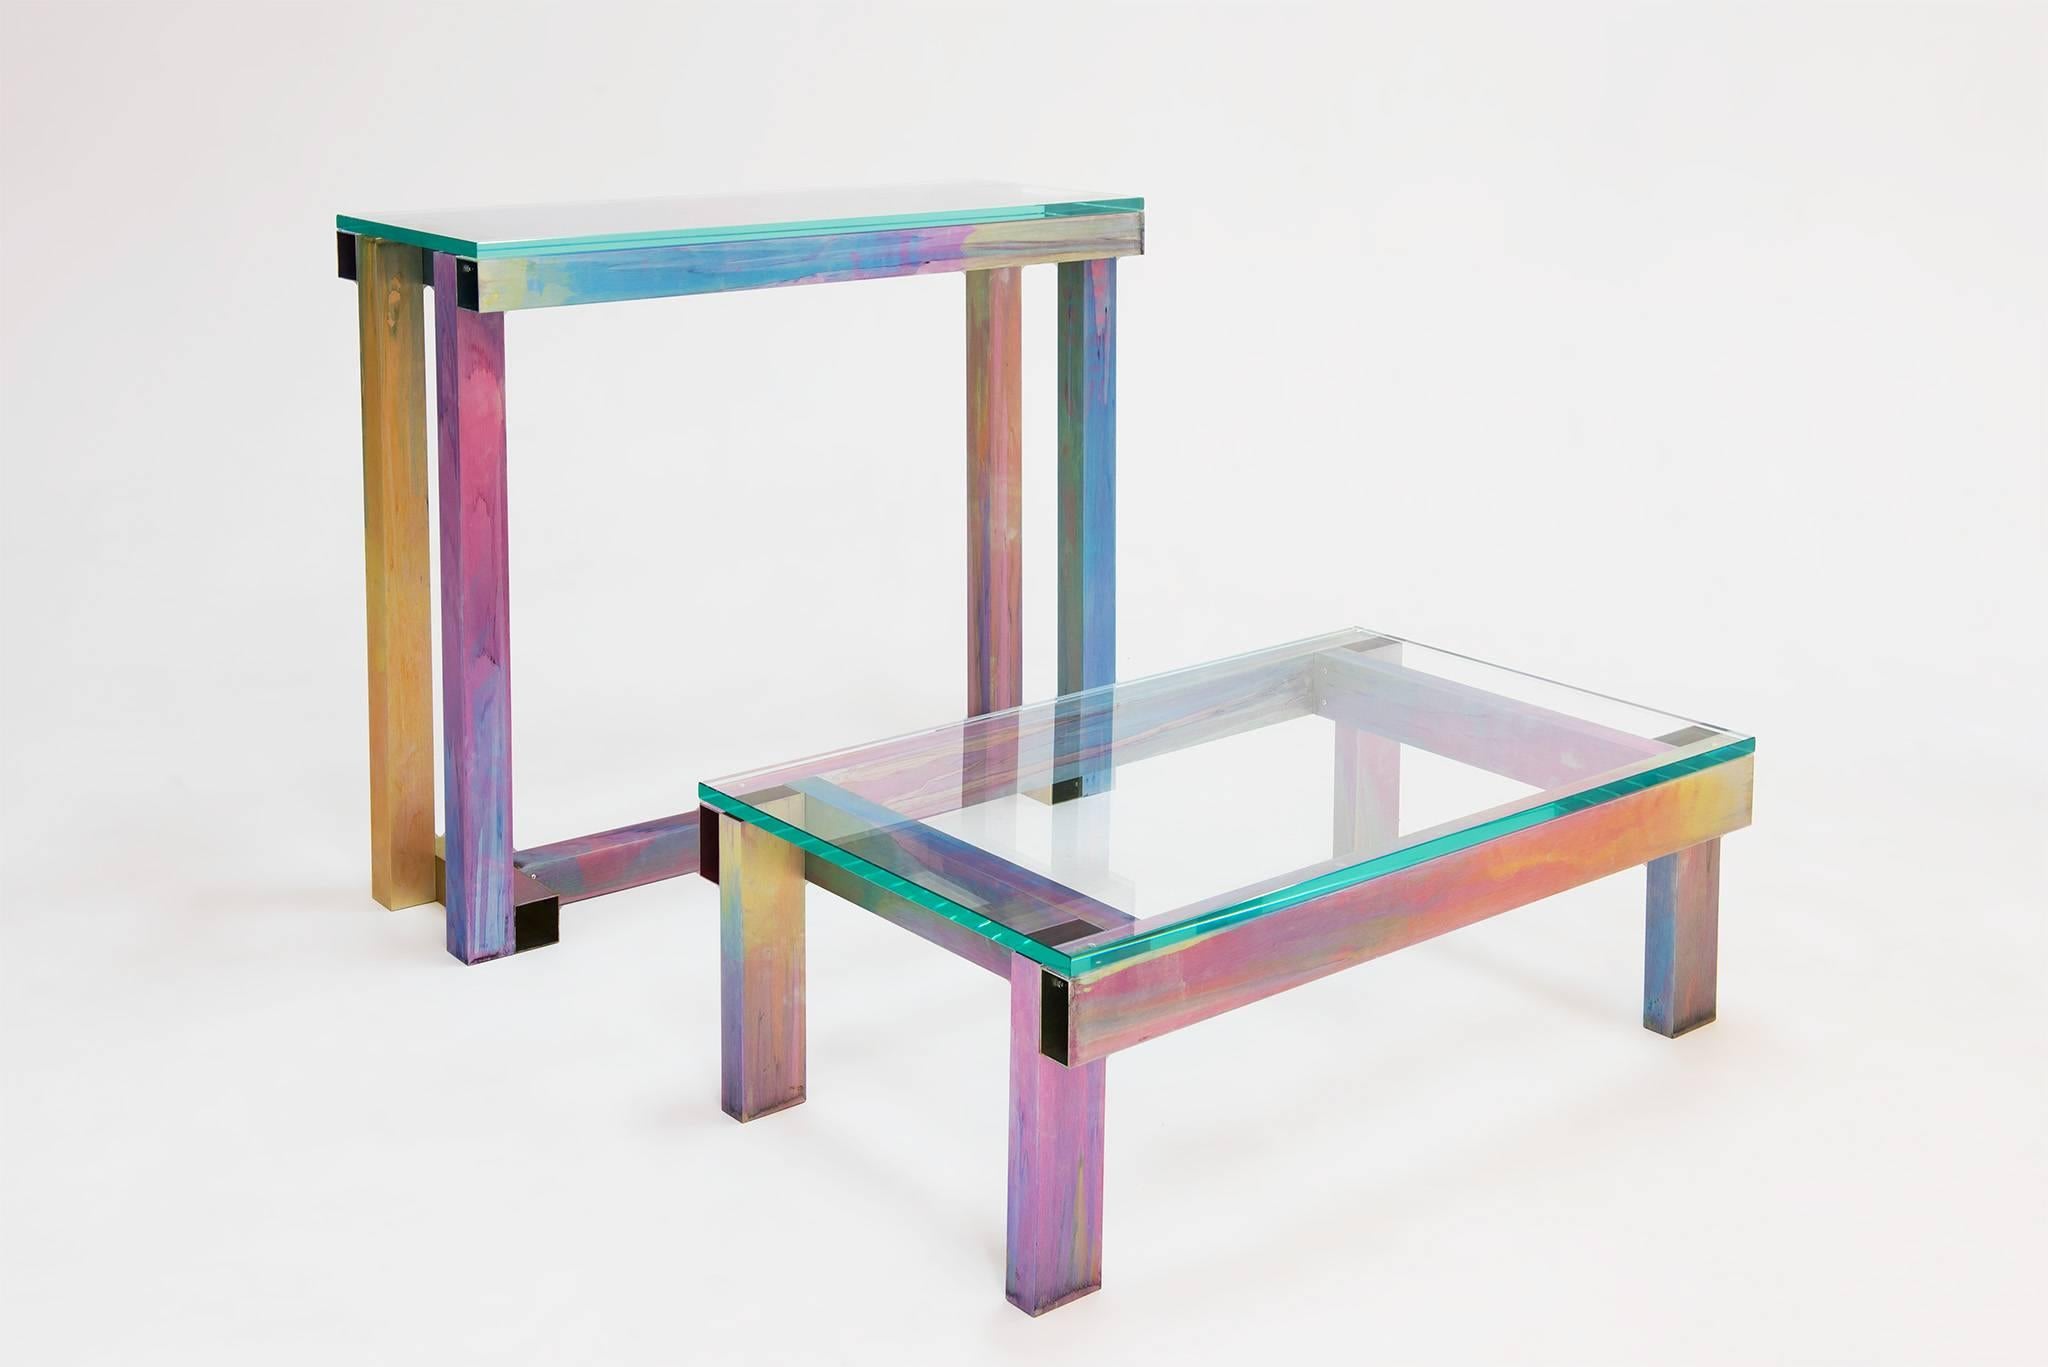 La table console de Fredrik Paulsen, commandée par Etage Projects pour le Salon Art + Design New York 2017, braque les projecteurs sur une toute nouvelle technique unique qui associe l'aluminium anodisé à sa signature, le rainbow tie-dye, que nous